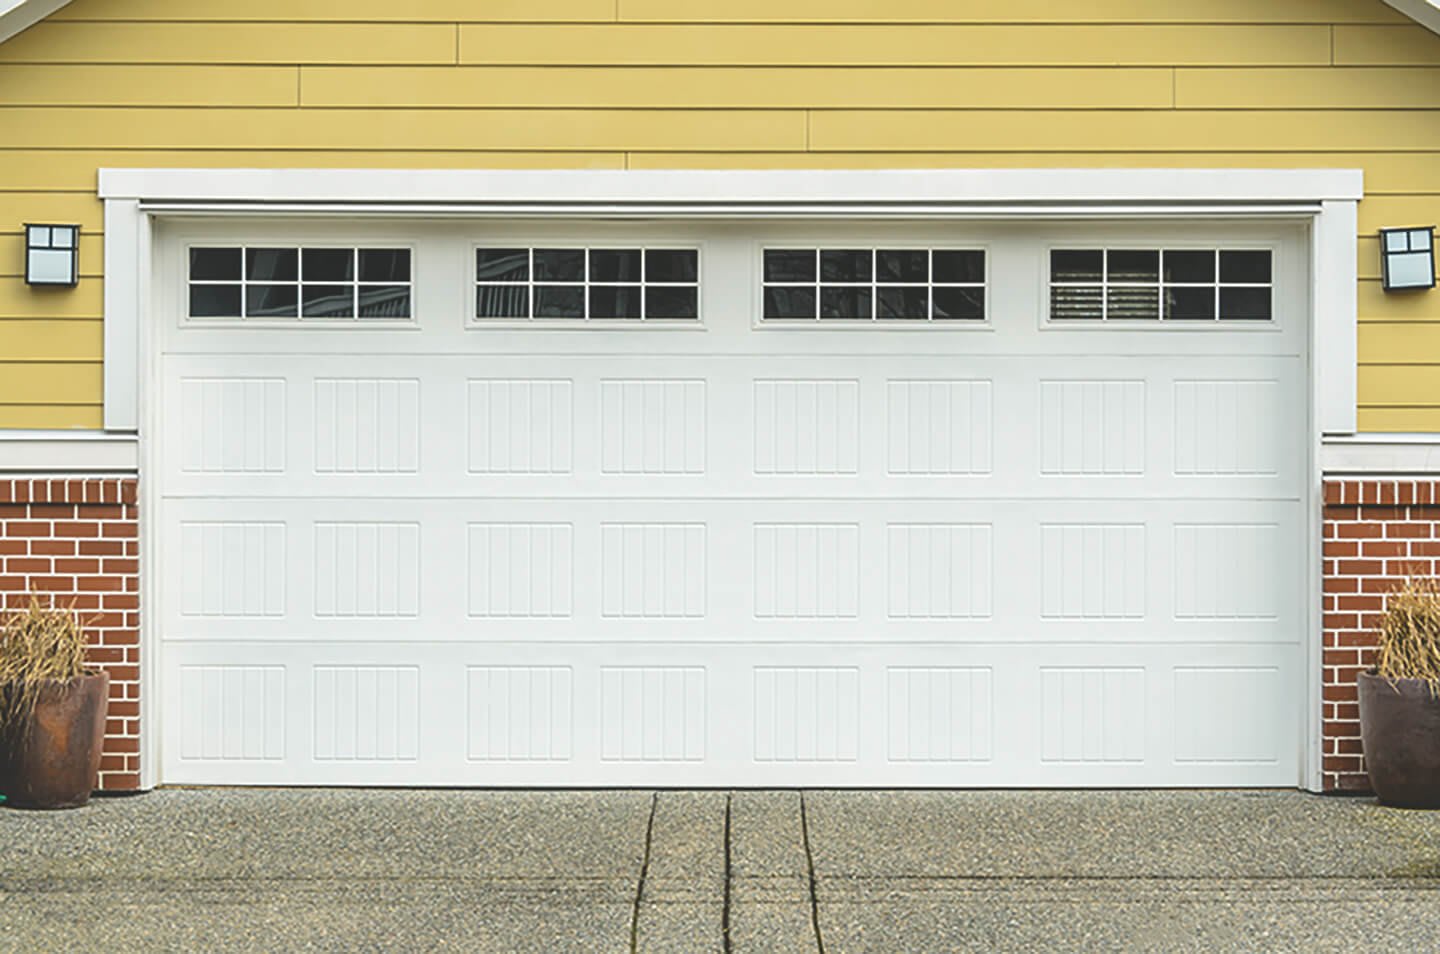 Artikelbild zum Thema Garagen Sicherheit zeigt ein breites Garagentor einer gelben Großraumgarage